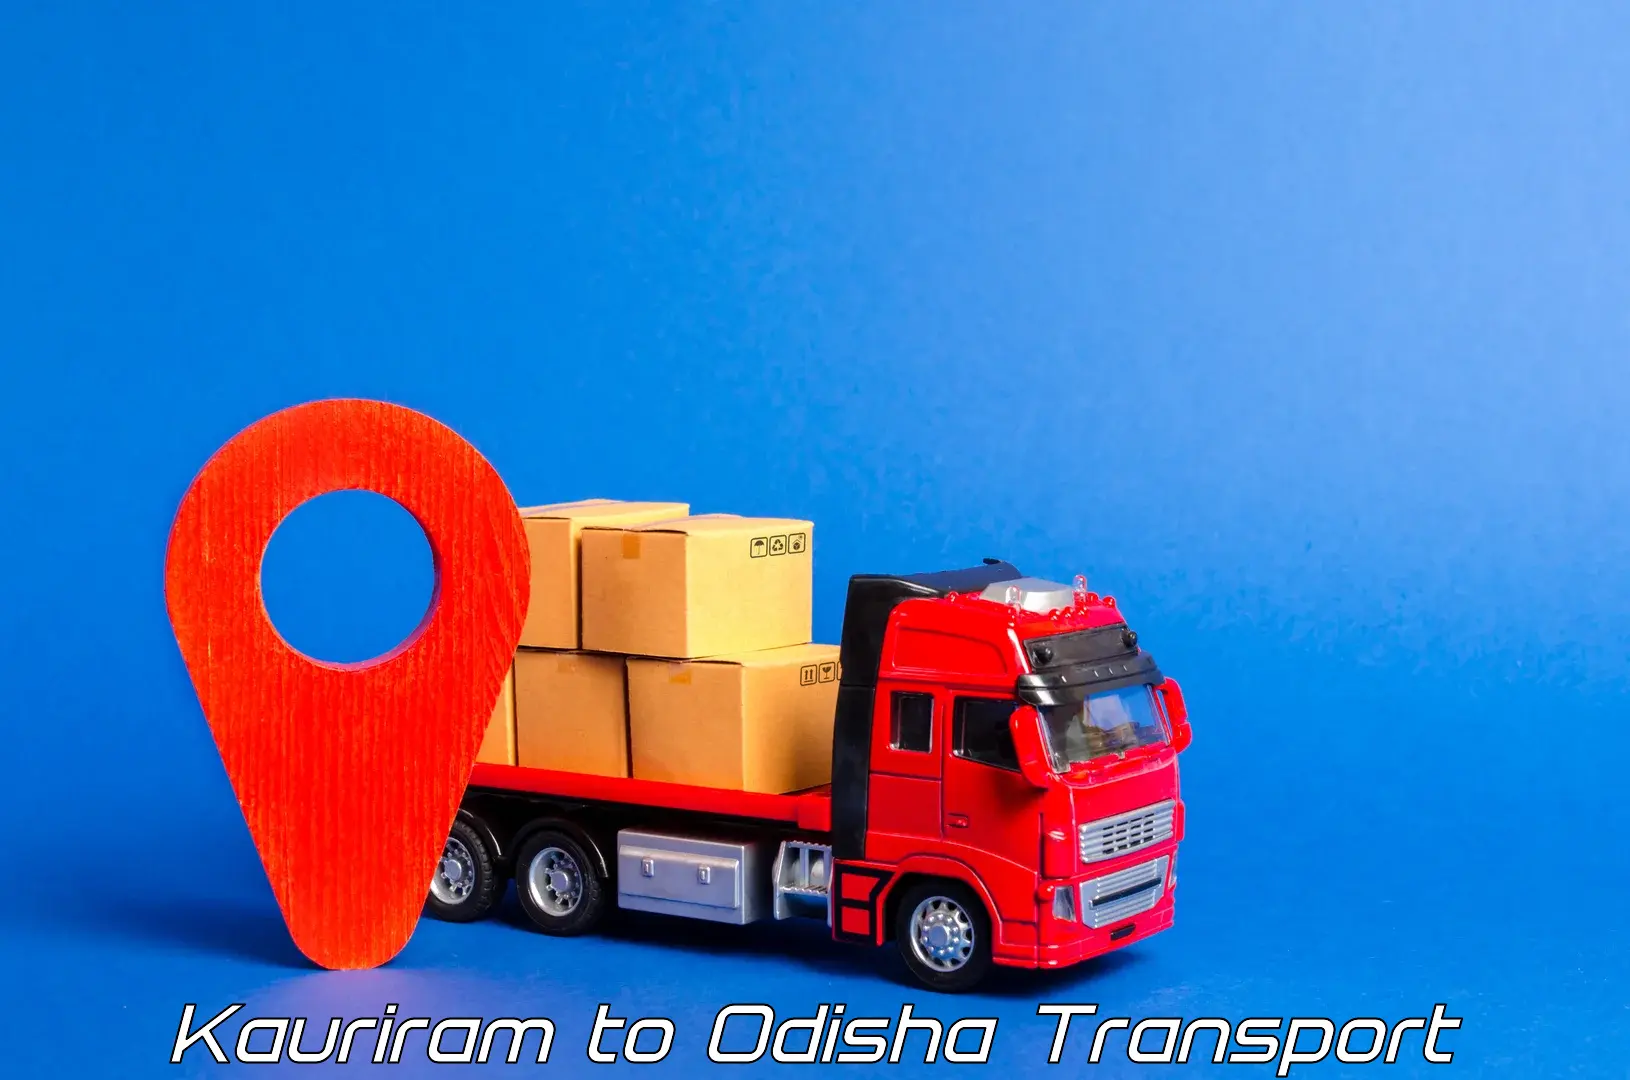 Scooty transport charges Kauriram to Thakurmunda